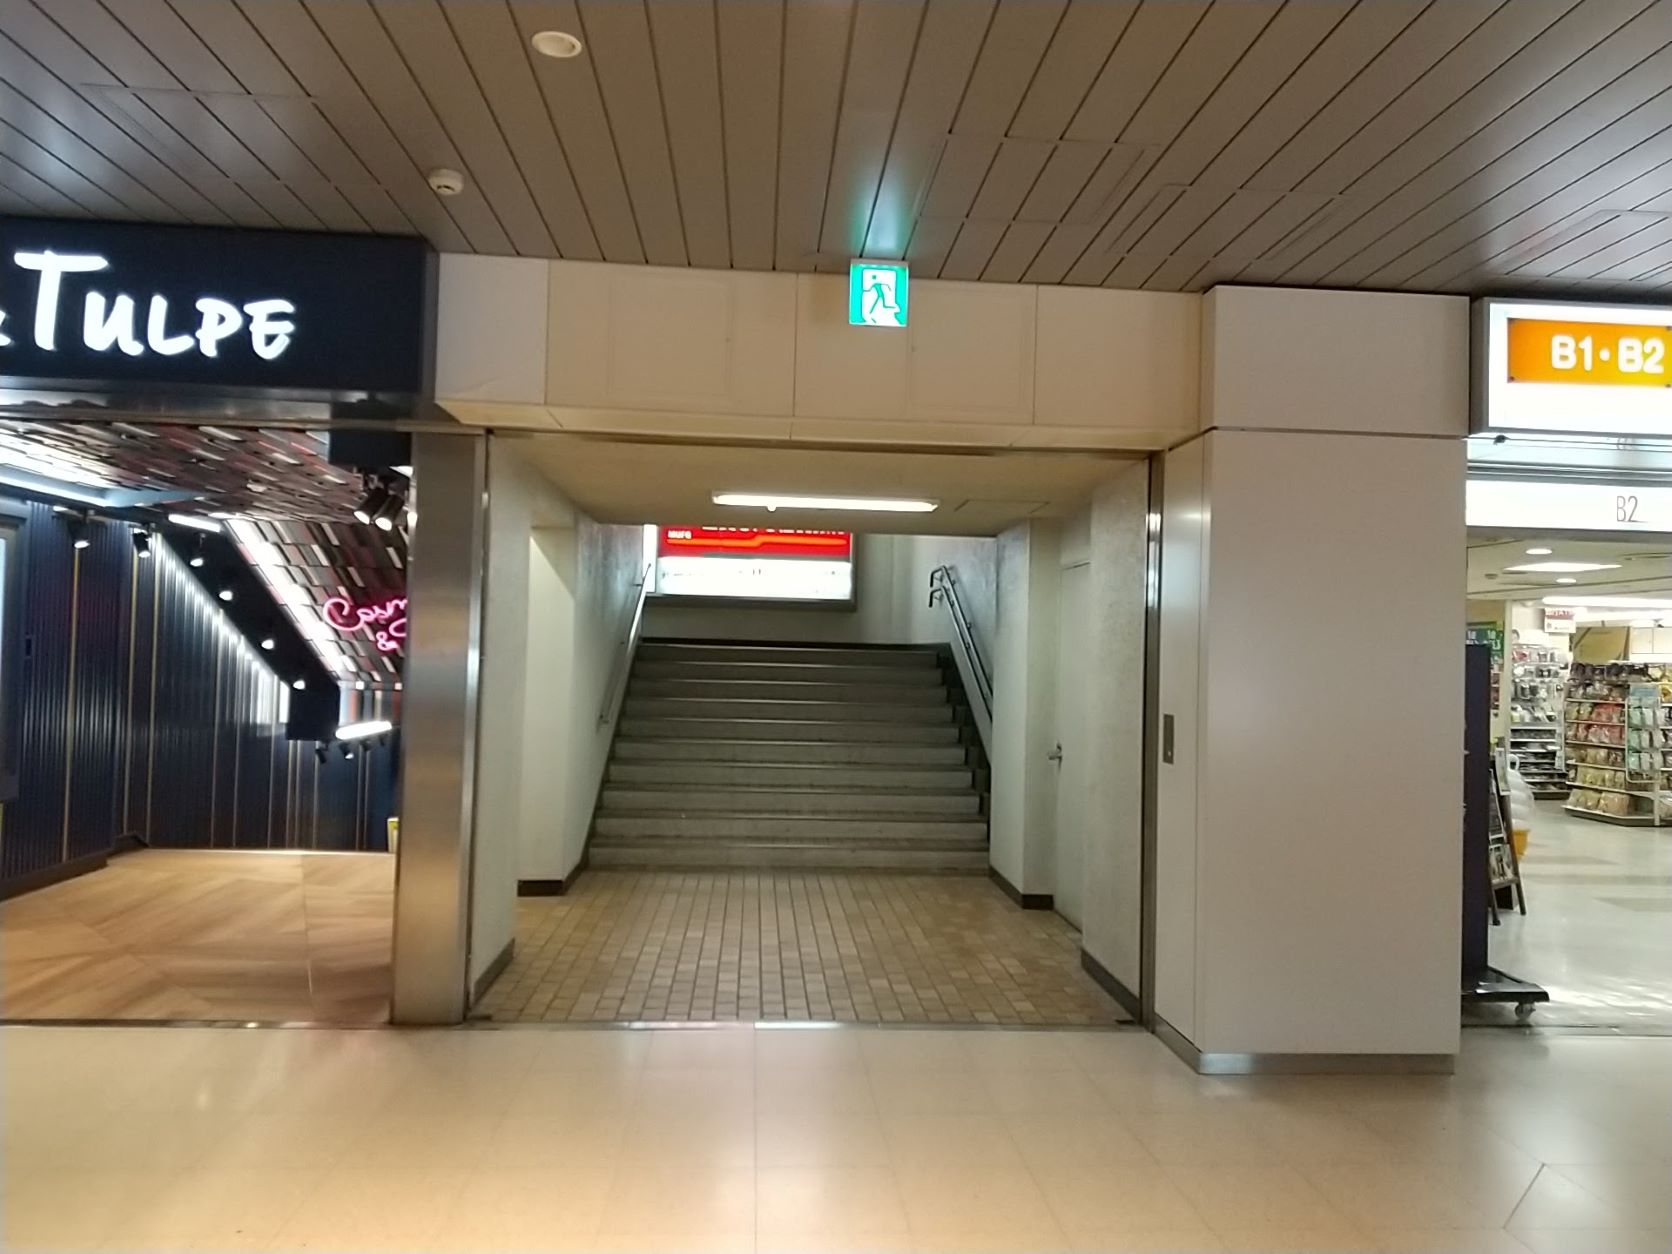 札幌国際ビルの地下から地上にあがる階段